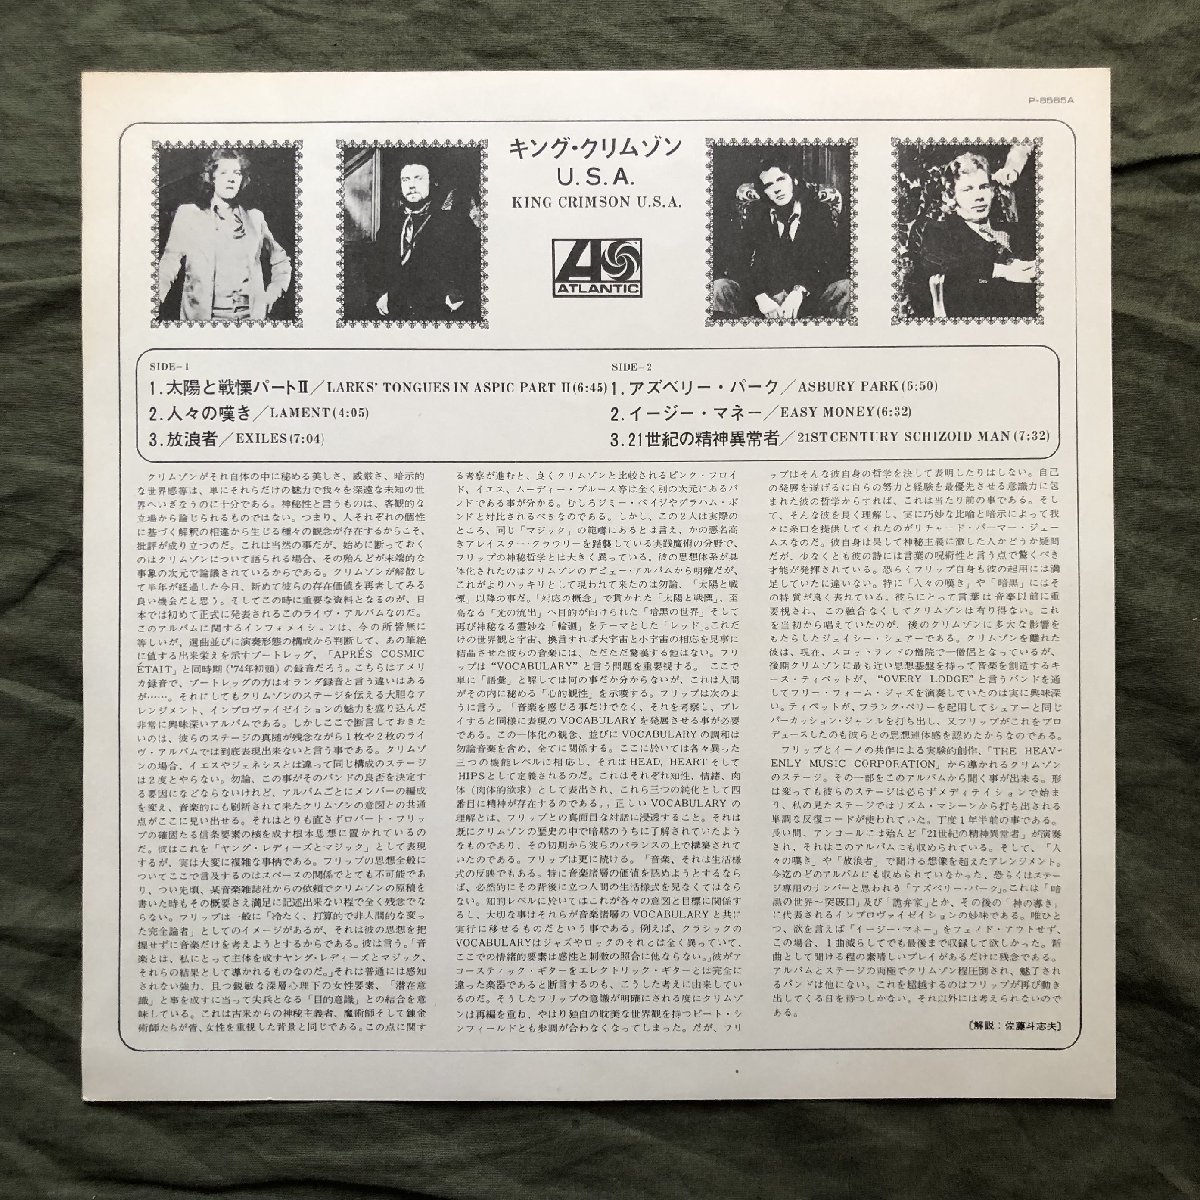  прекрасный запись хорошо jacket 1975 год записано в Японии King * Crimson King Crimson LP запись U*S*A USA John Wetton, Bill Bruford, Robert Fripp